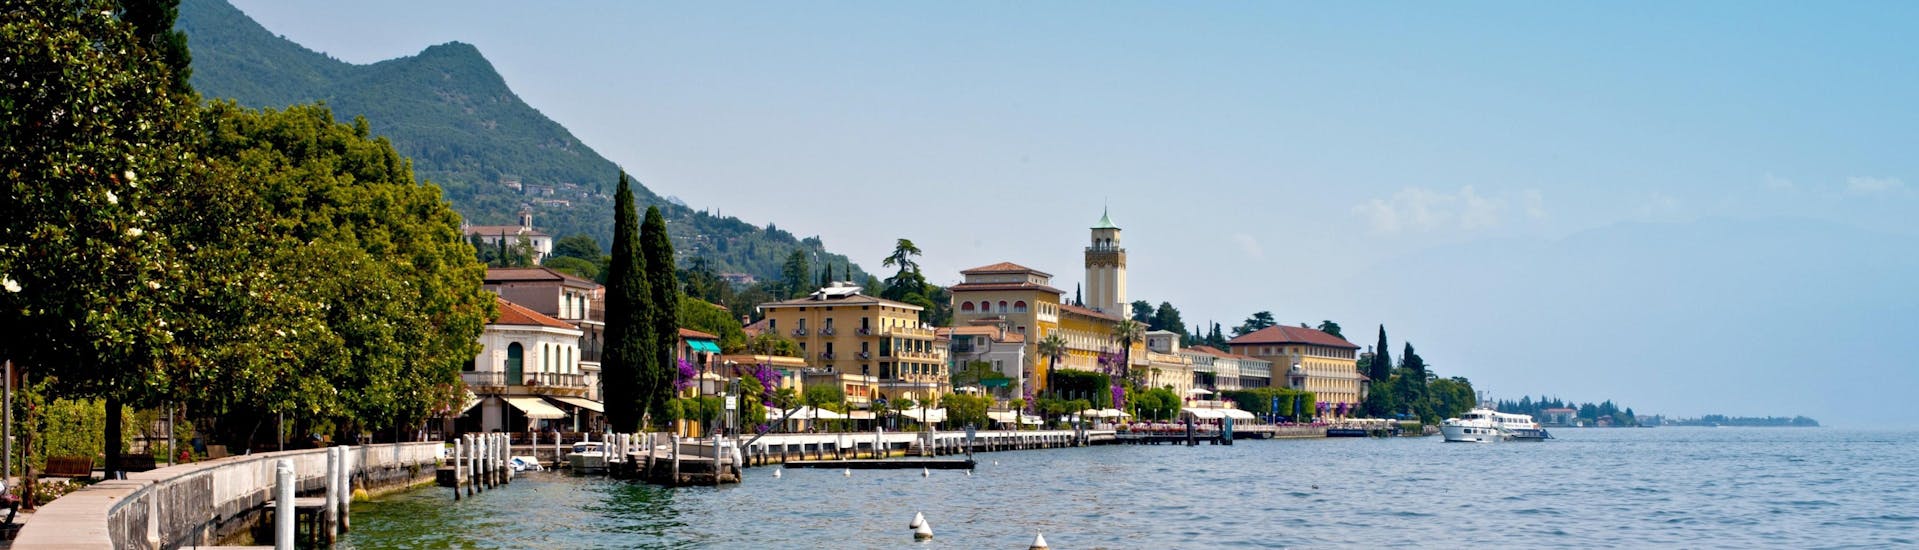 Die Stadt Gardone Riviera am Gardasee in Italien.